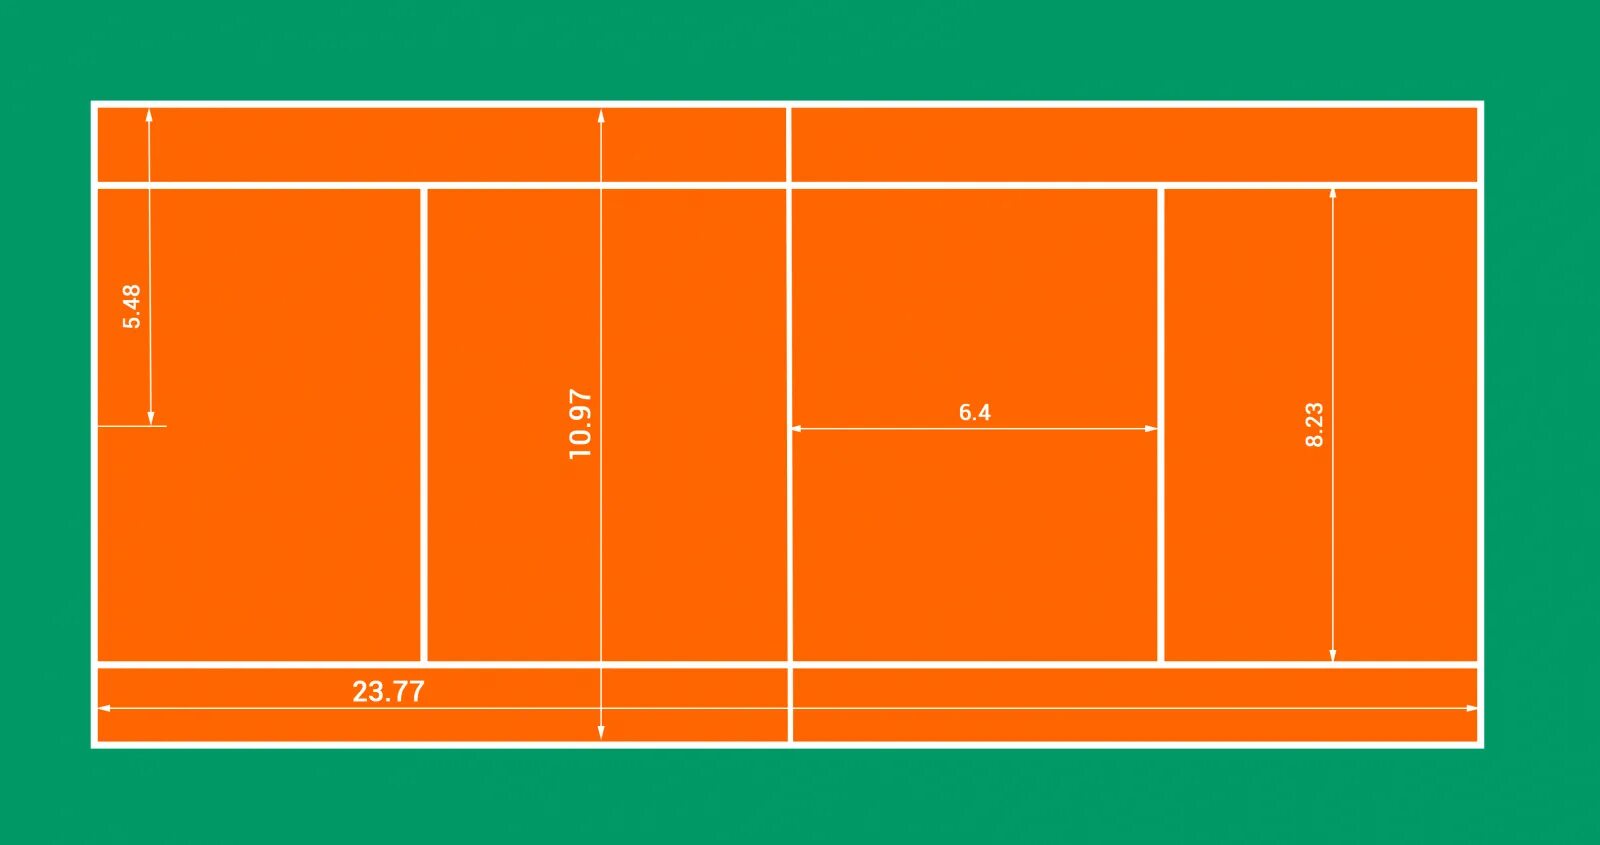 Размеры корта для тенниса. Разметка теннисного корта большой теннис. Теннисный корт разметка стандарт. Площадь теннисного корта м2. Размеры теннисного корта для большого тенниса в метрах.